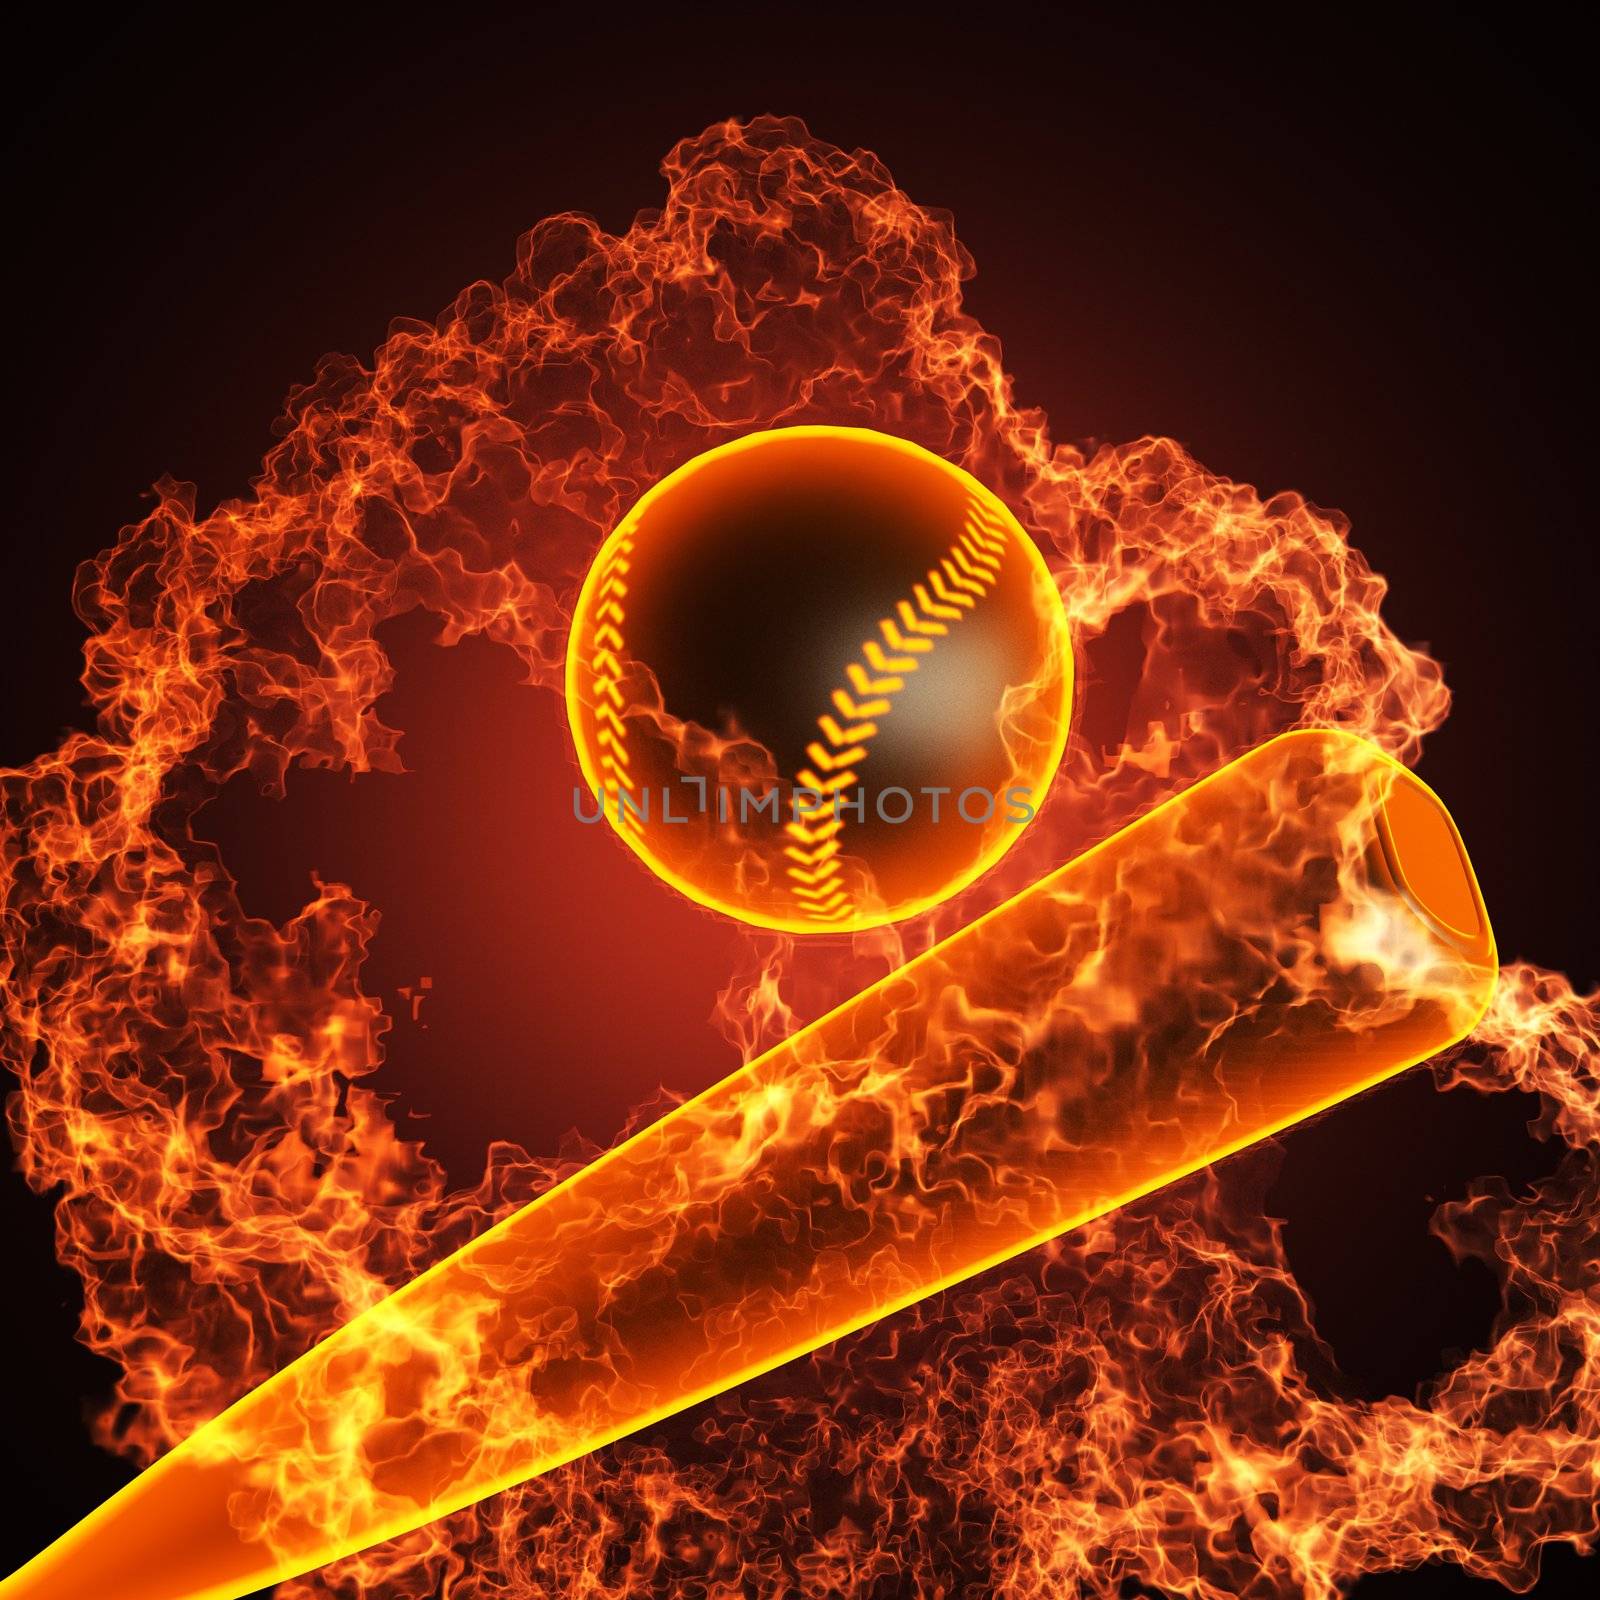 Baseball in fire by videodoctor